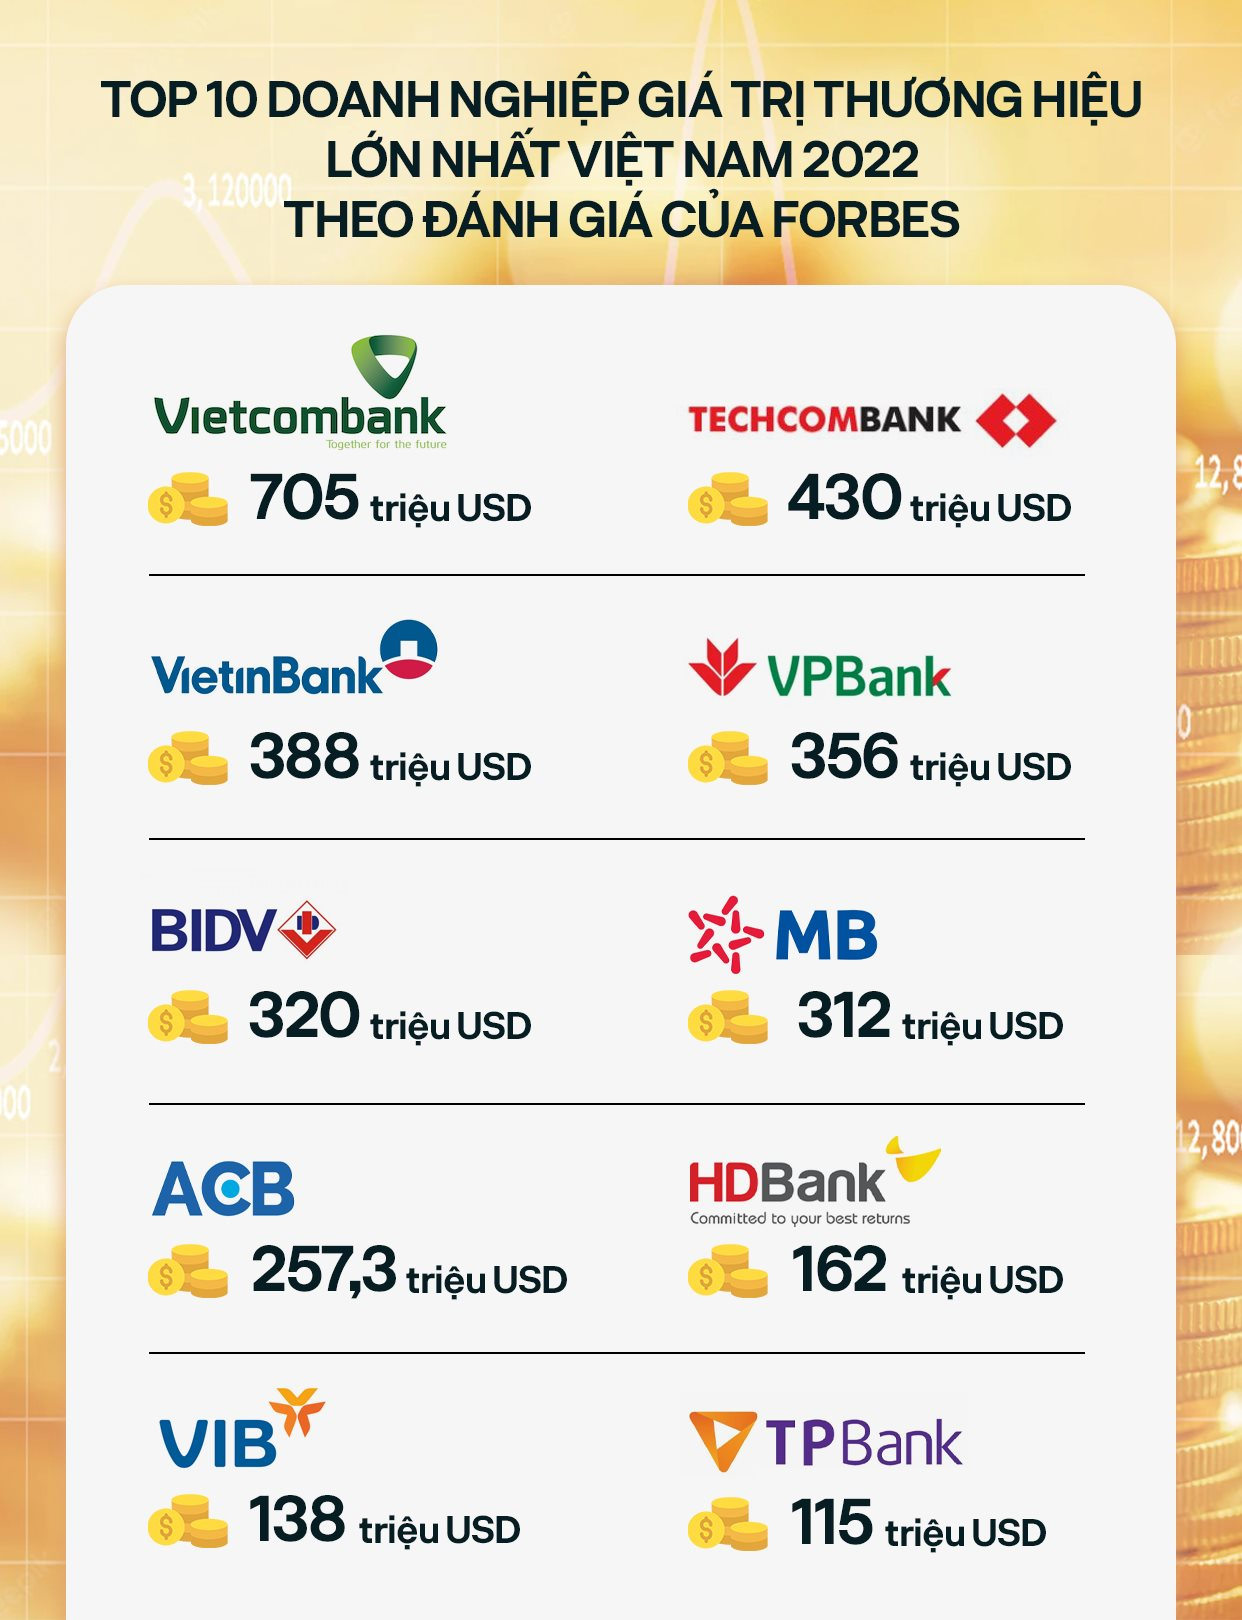 Forbes công bố thương hiệu tài chính hàng đầu Việt Nam: Vietcombank dẫn đầu, Techcombank và VPBank không kém cạnh - Ảnh 2.